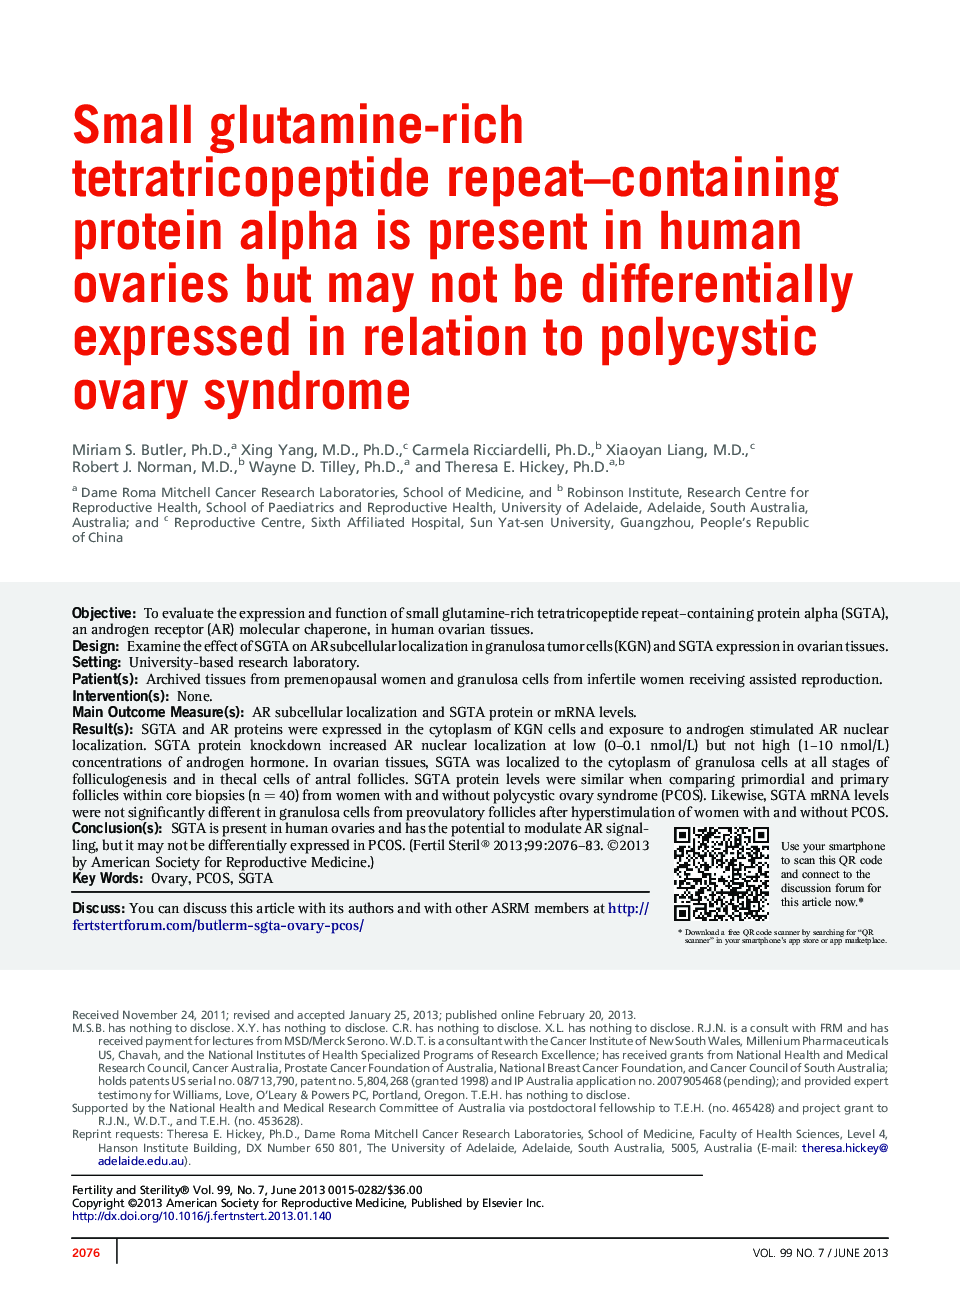 پروتئین آلفای حاوی تکرارآمریکپتید با غلظت گلوتامین در تخمدانهای انسانی موجود است اما ممکن است در ارتباط با سندرم تخمدان پلی کیستیک بیان نشود 